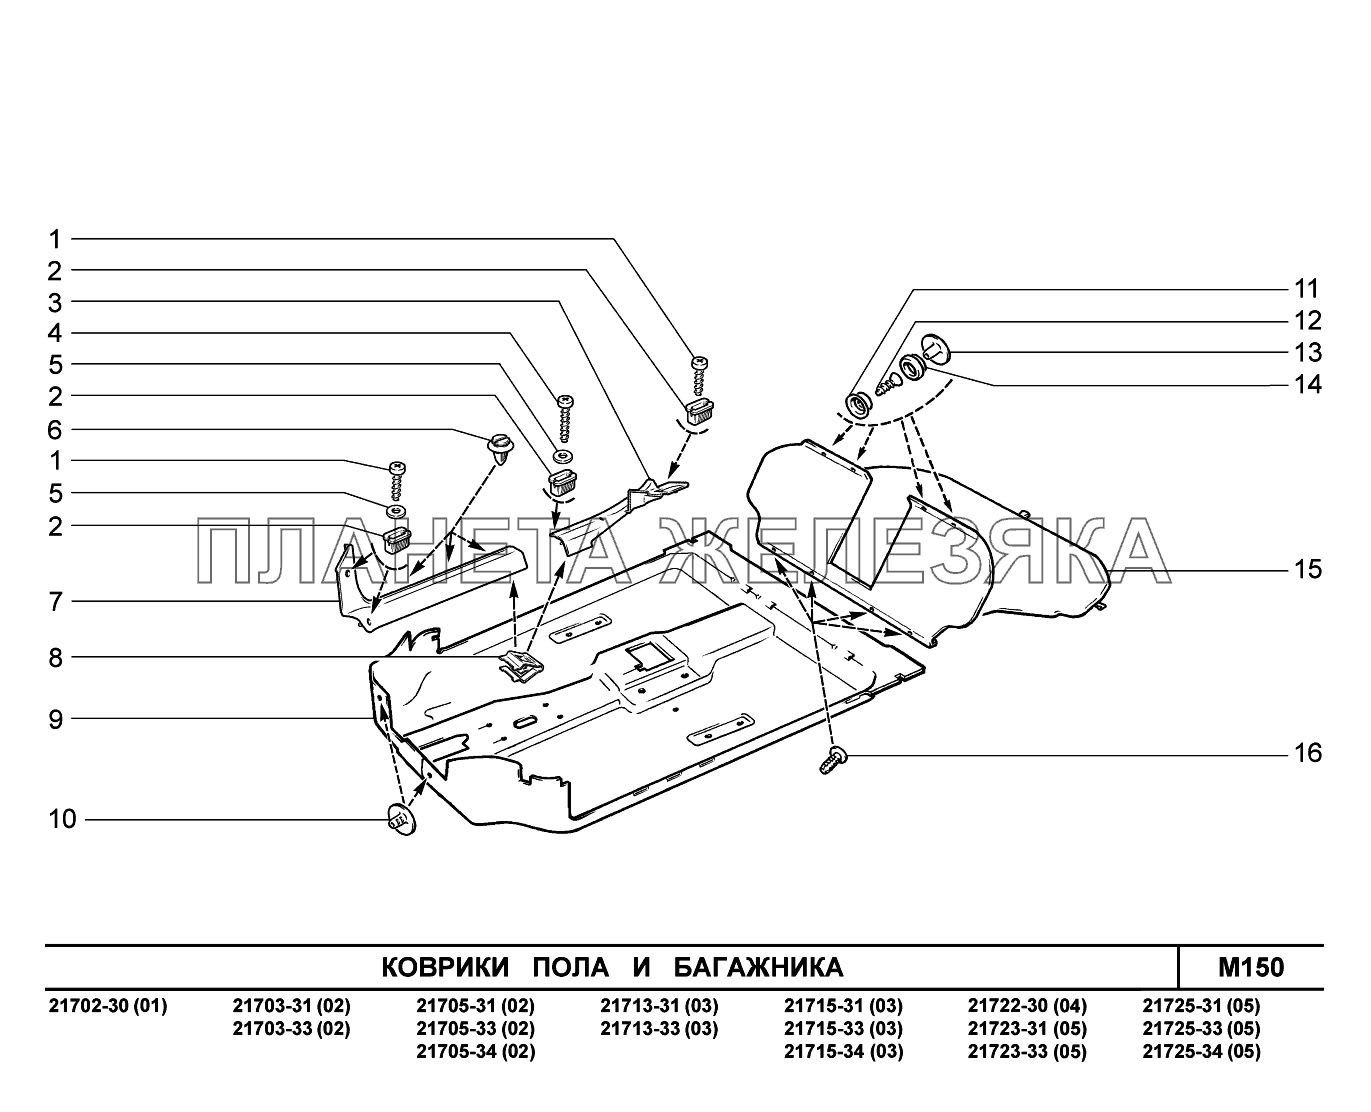 M150. Коврики пола и багажника ВАЗ-2170 